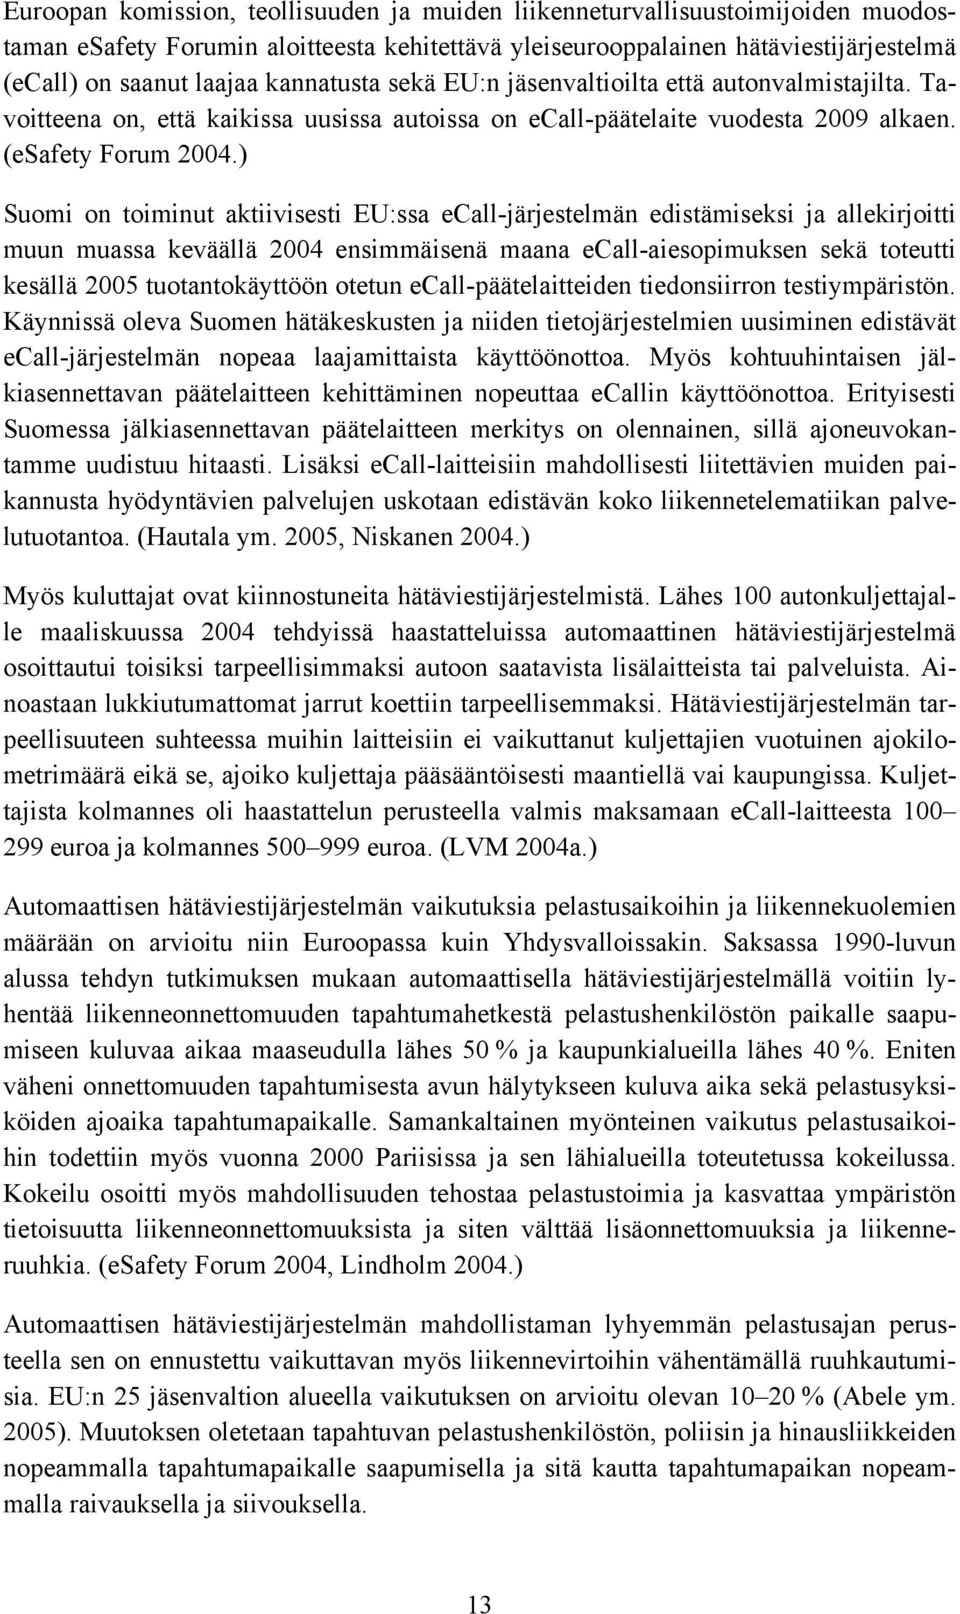 ) Suomi on toiminut aktiivisesti EU:ssa ecall-järjestelmän edistämiseksi ja allekirjoitti muun muassa keväällä 2004 ensimmäisenä maana ecall-aiesopimuksen sekä toteutti kesällä 2005 tuotantokäyttöön